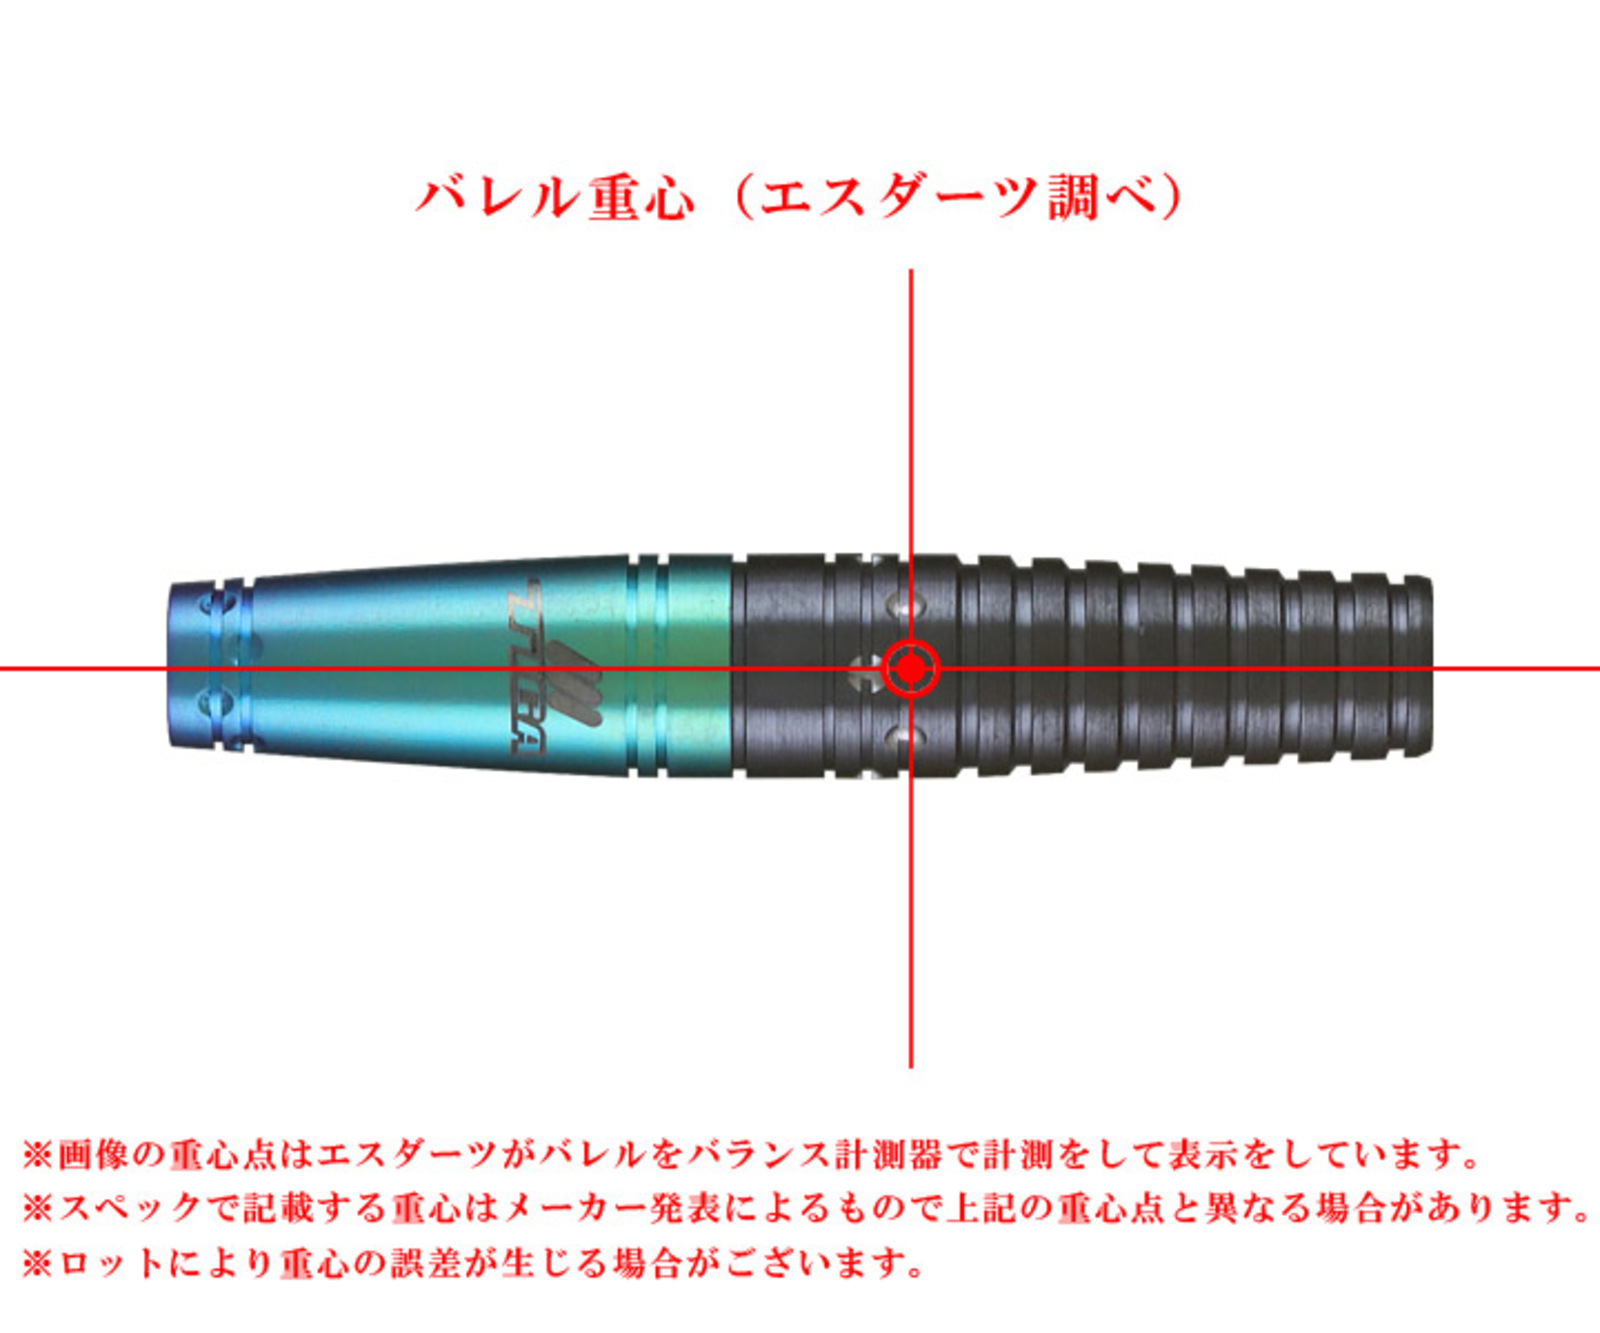 TIGA】EMPRECHU Fusion Yukie Sakaguchi Model | Darts Online Shop S 